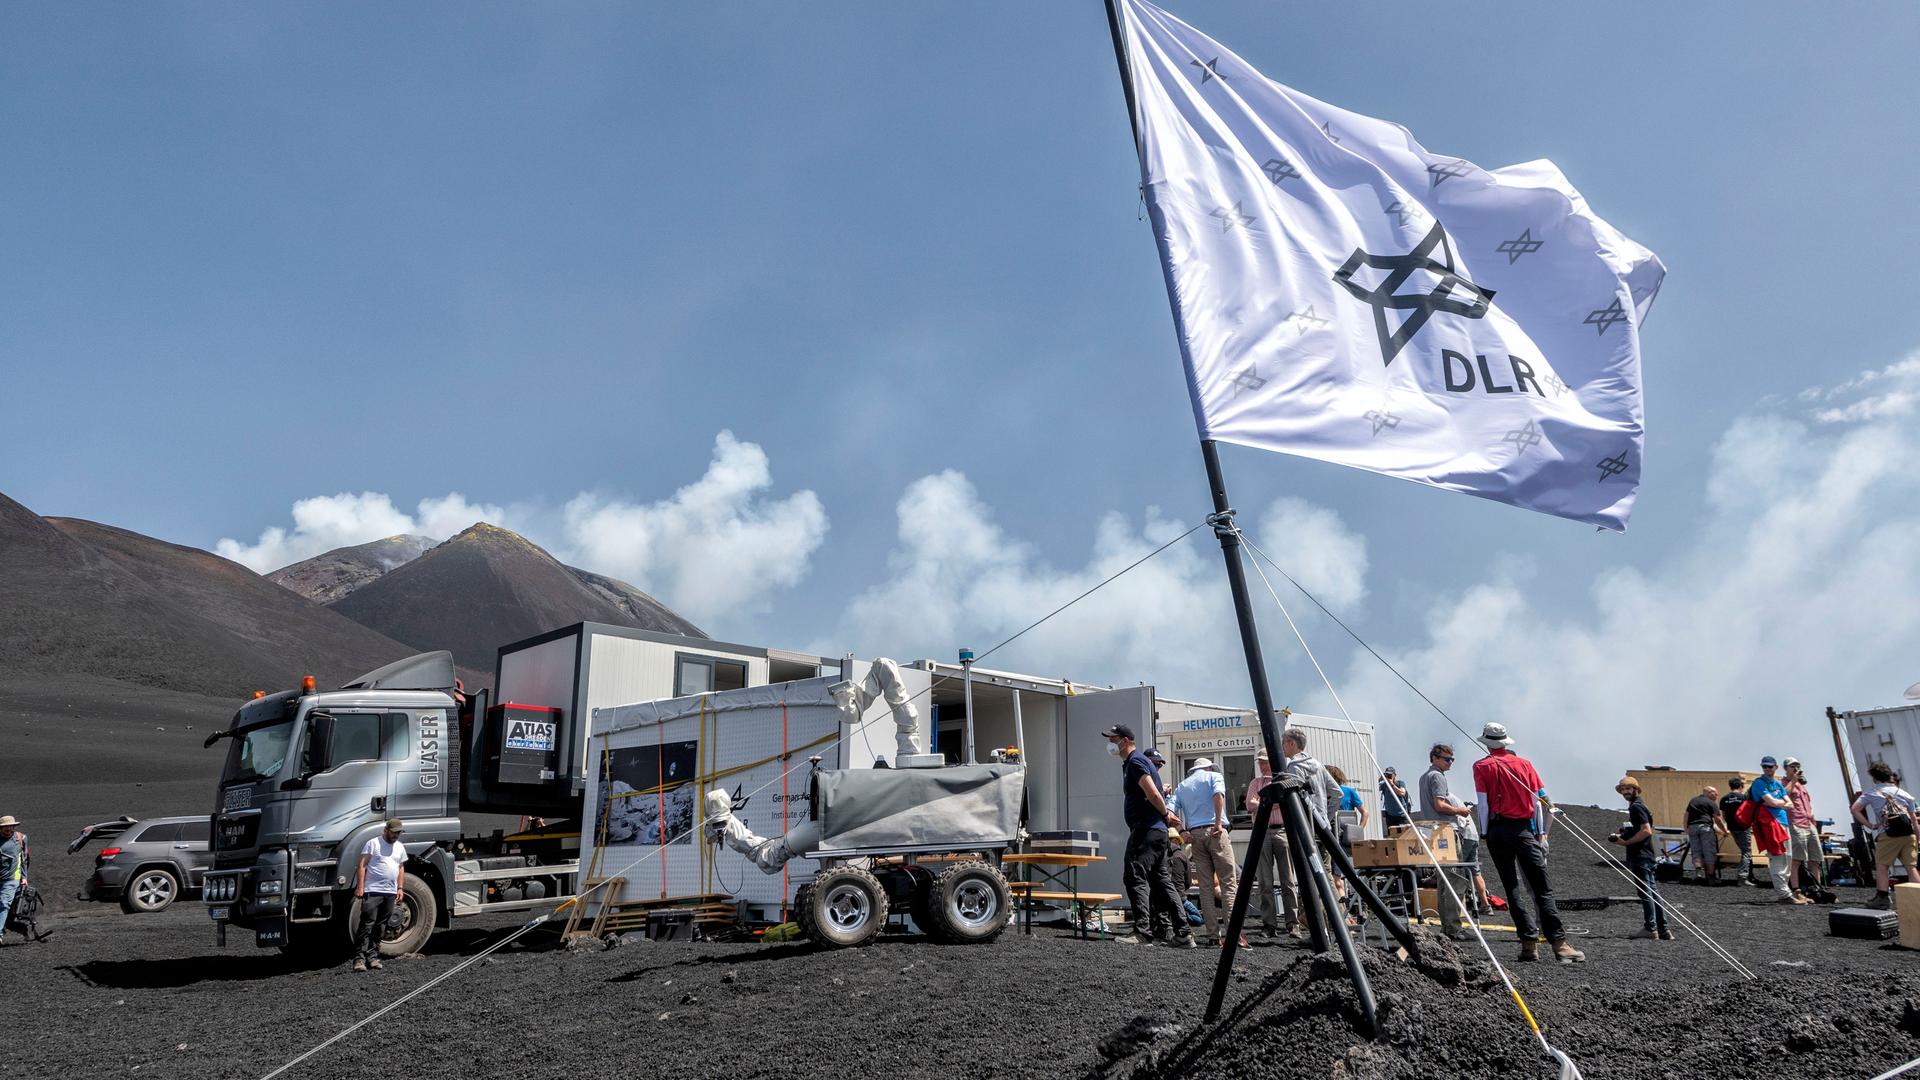 Juni 2022 am Vulkan Etna auf Sizilien: Das Deutsche Zentrum für Luft- und Raumfahrt testet mit der Europäischen Weltraumagentur ESA mehrere Rover unter mondähnlichen Bedingungen für eine geplante Mond-Mission